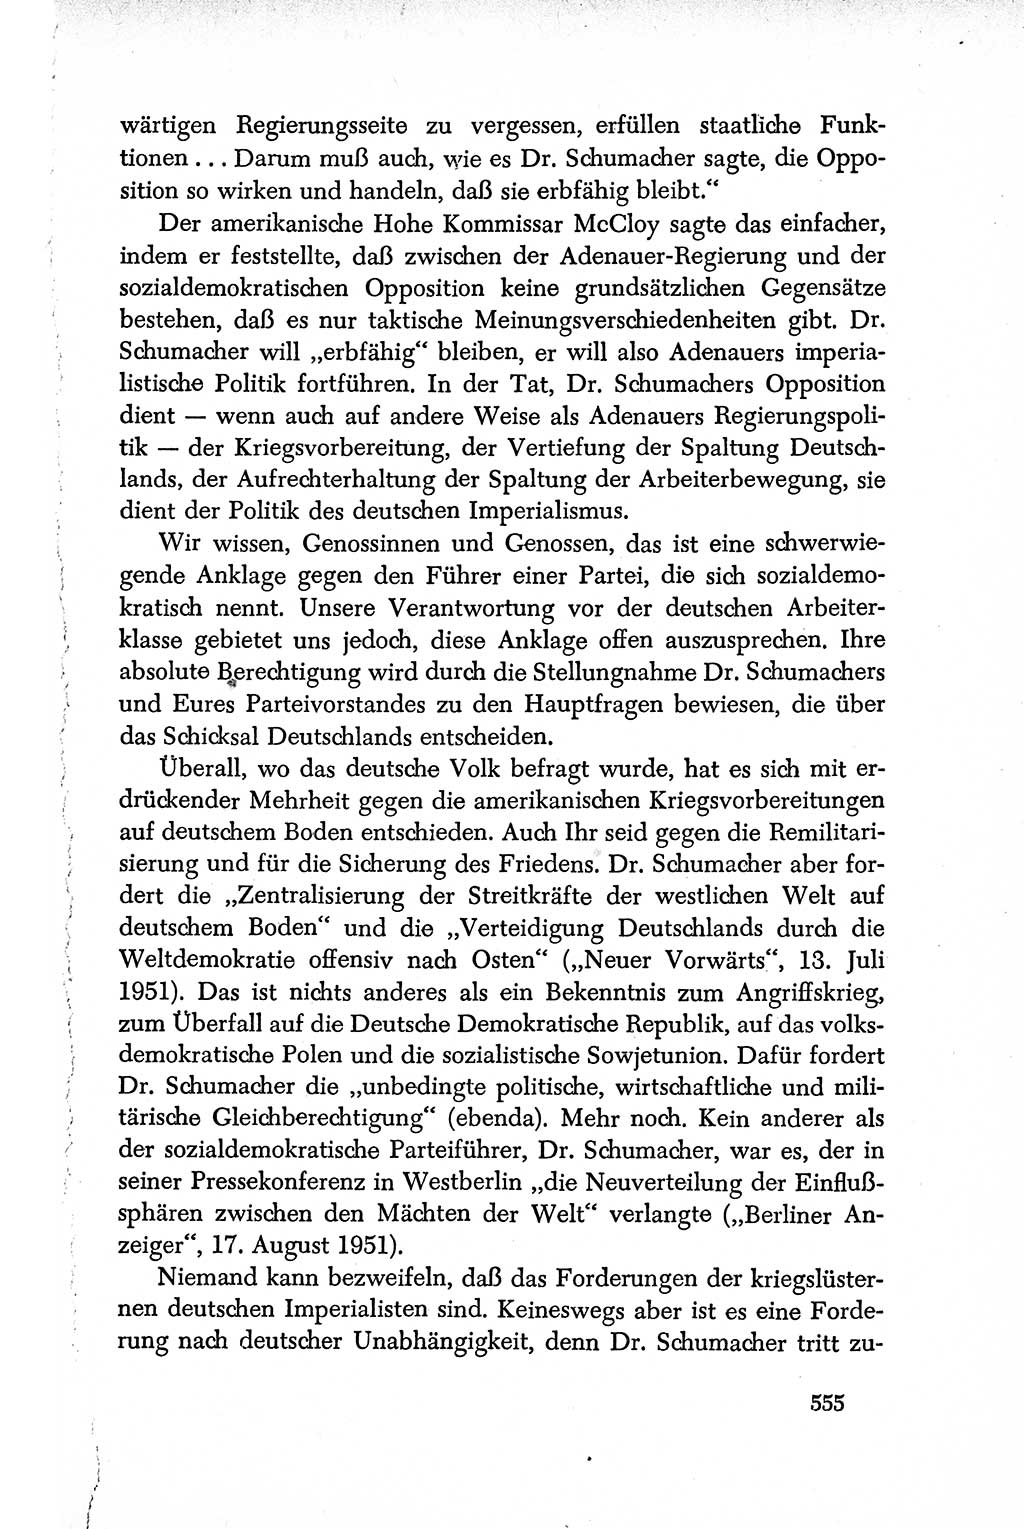 Dokumente der Sozialistischen Einheitspartei Deutschlands (SED) [Deutsche Demokratische Republik (DDR)] 1950-1952, Seite 555 (Dok. SED DDR 1950-1952, S. 555)